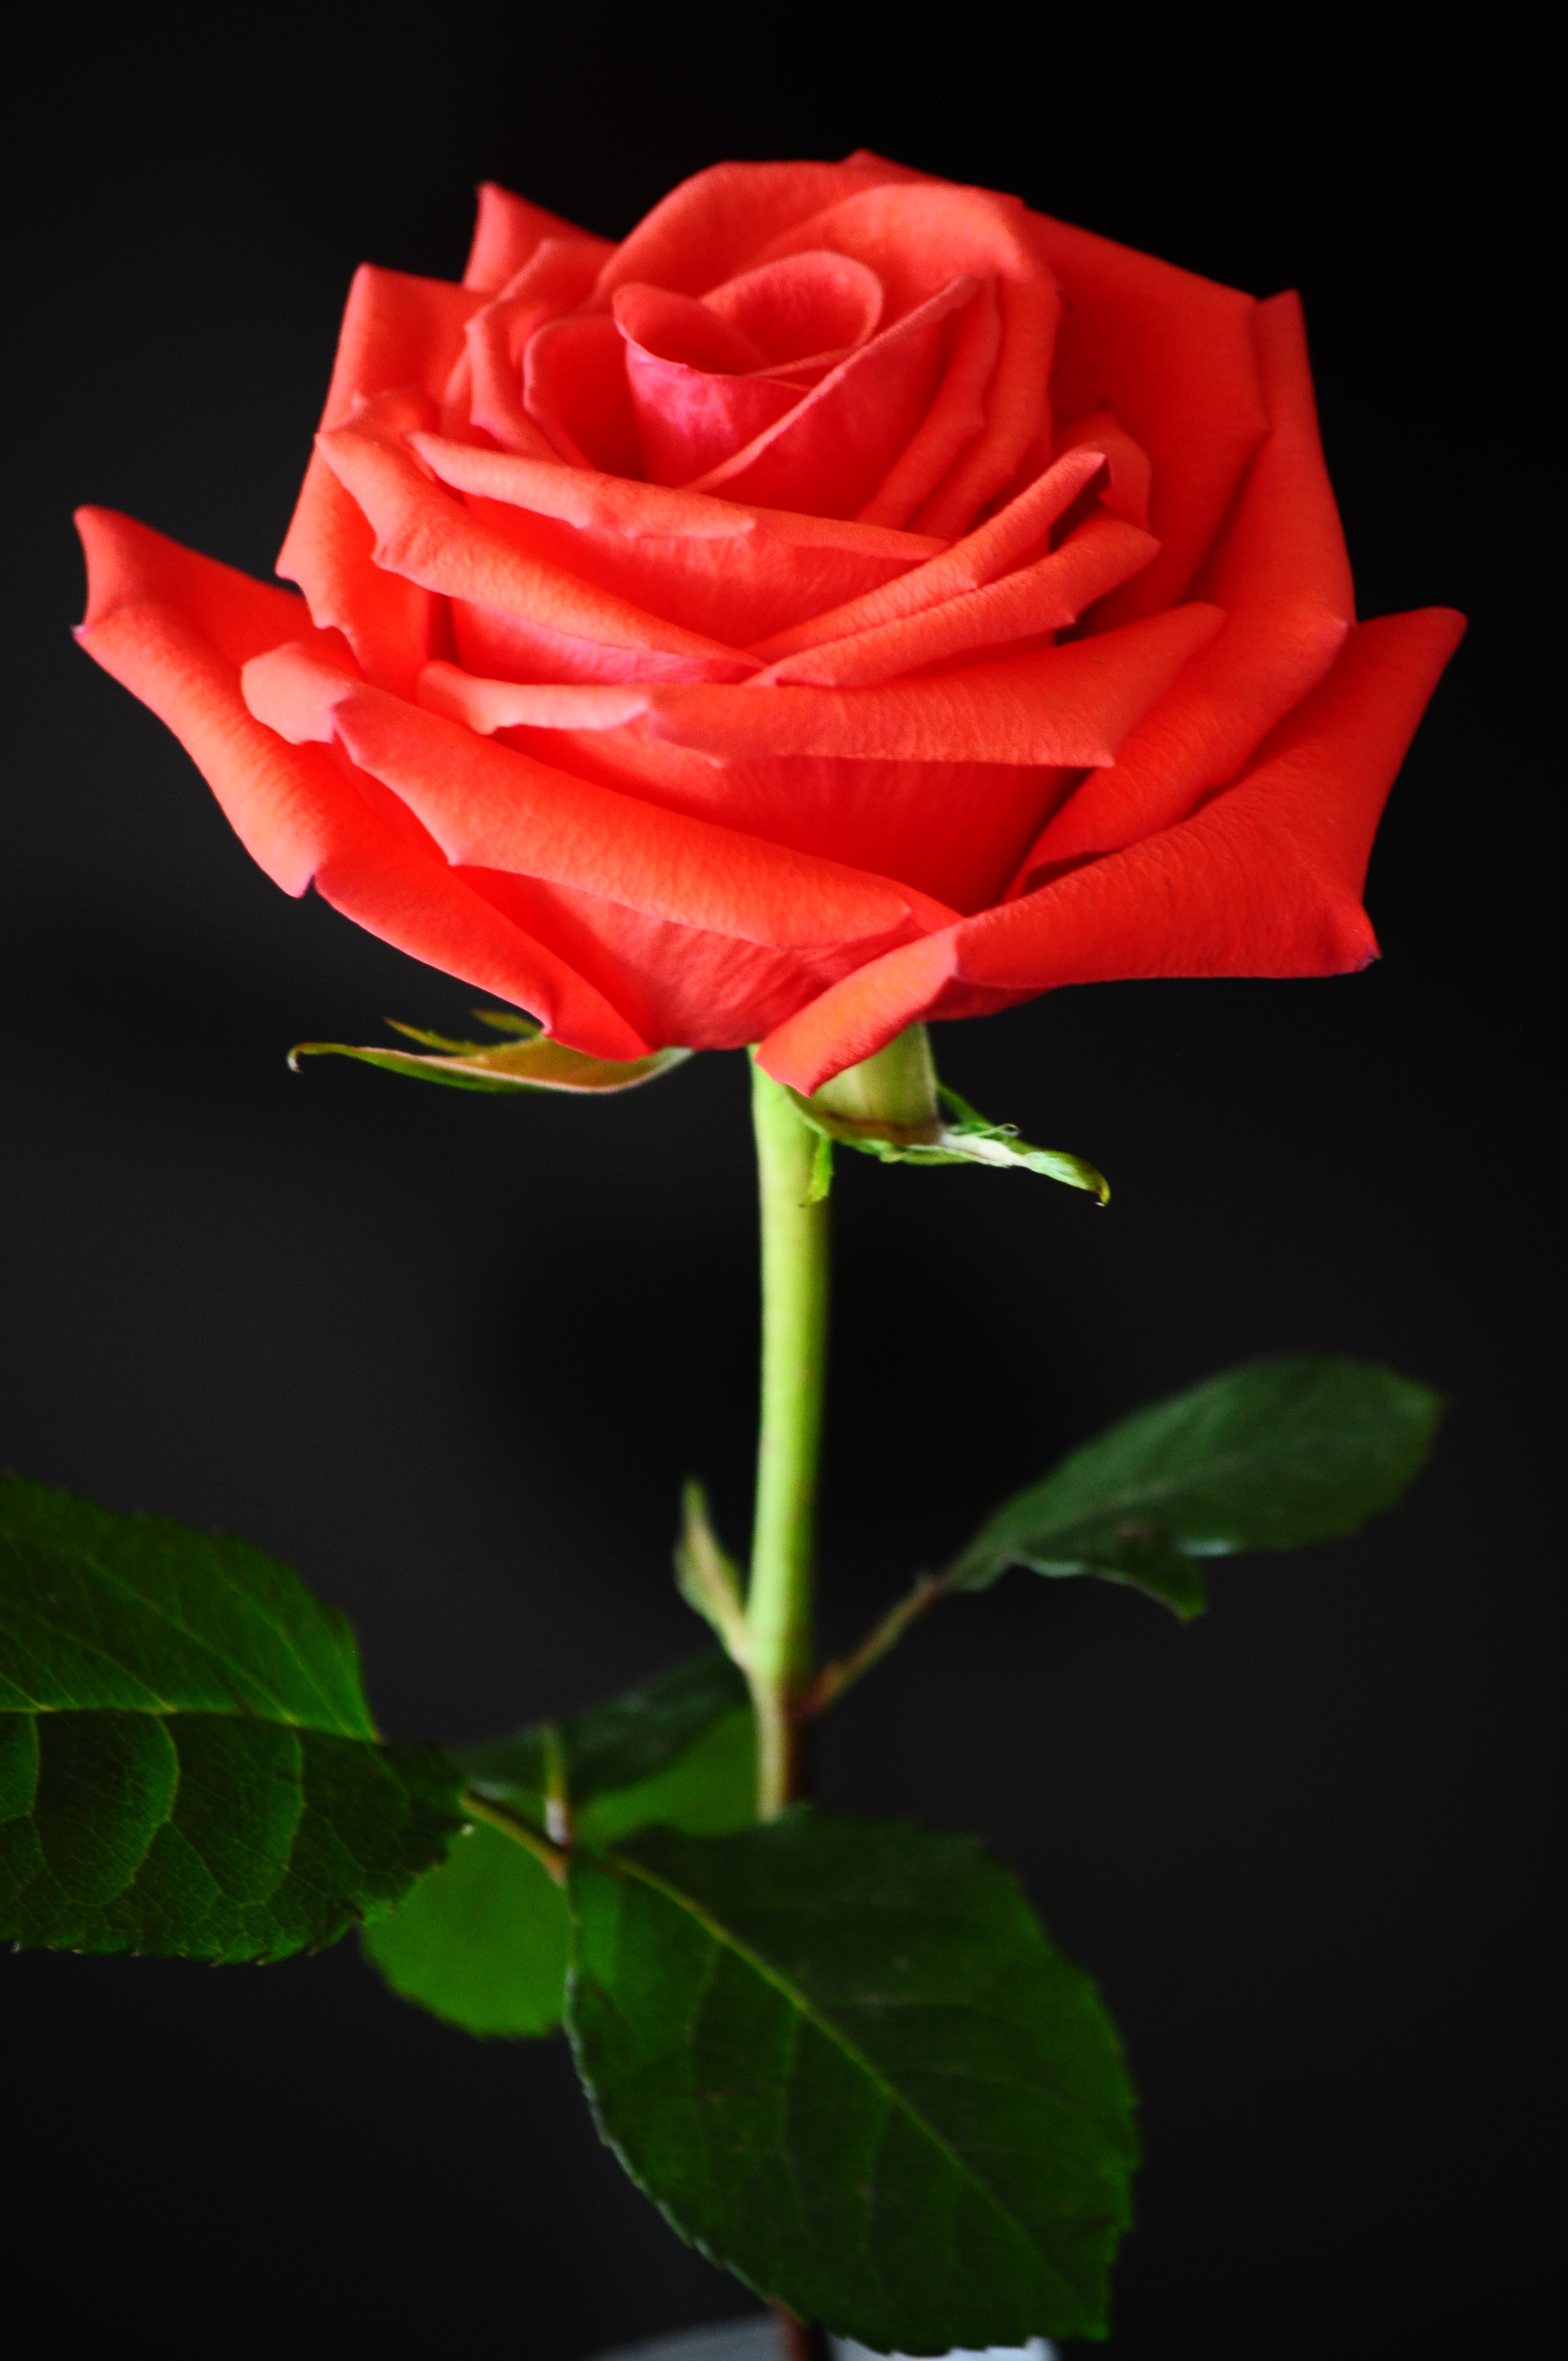 FileRed rose against a black backgroundjpg   Wikimedia